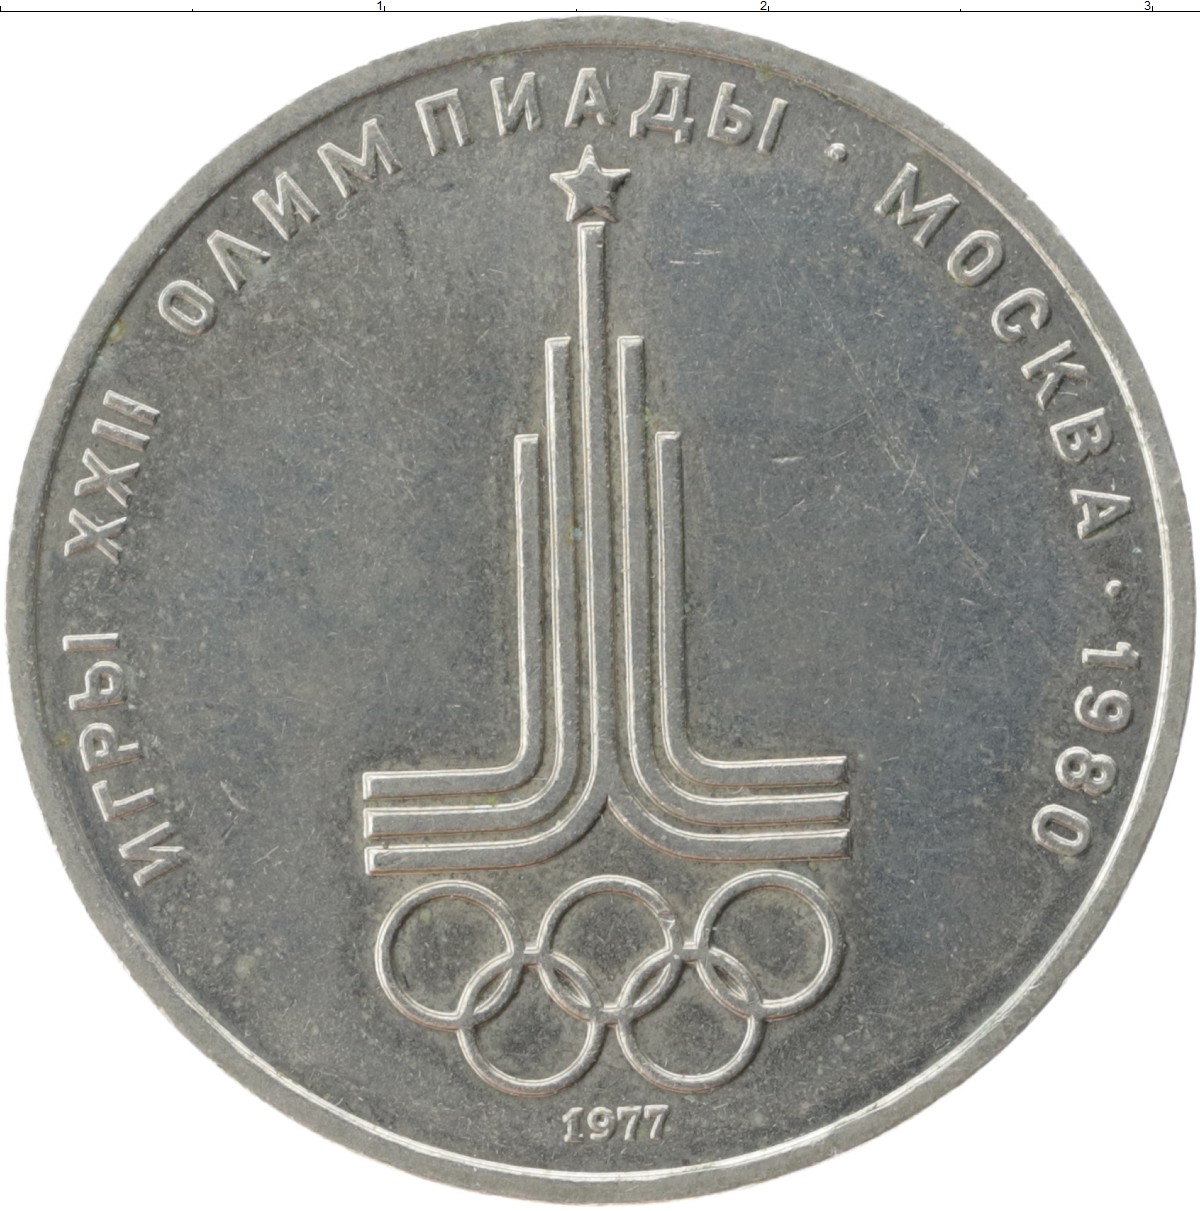 1 80 в рублях. 1 Рубль СССР 1980 год игры олимпиады Москва. Монета СССР 1 рубль 1980 года Олимпийский.